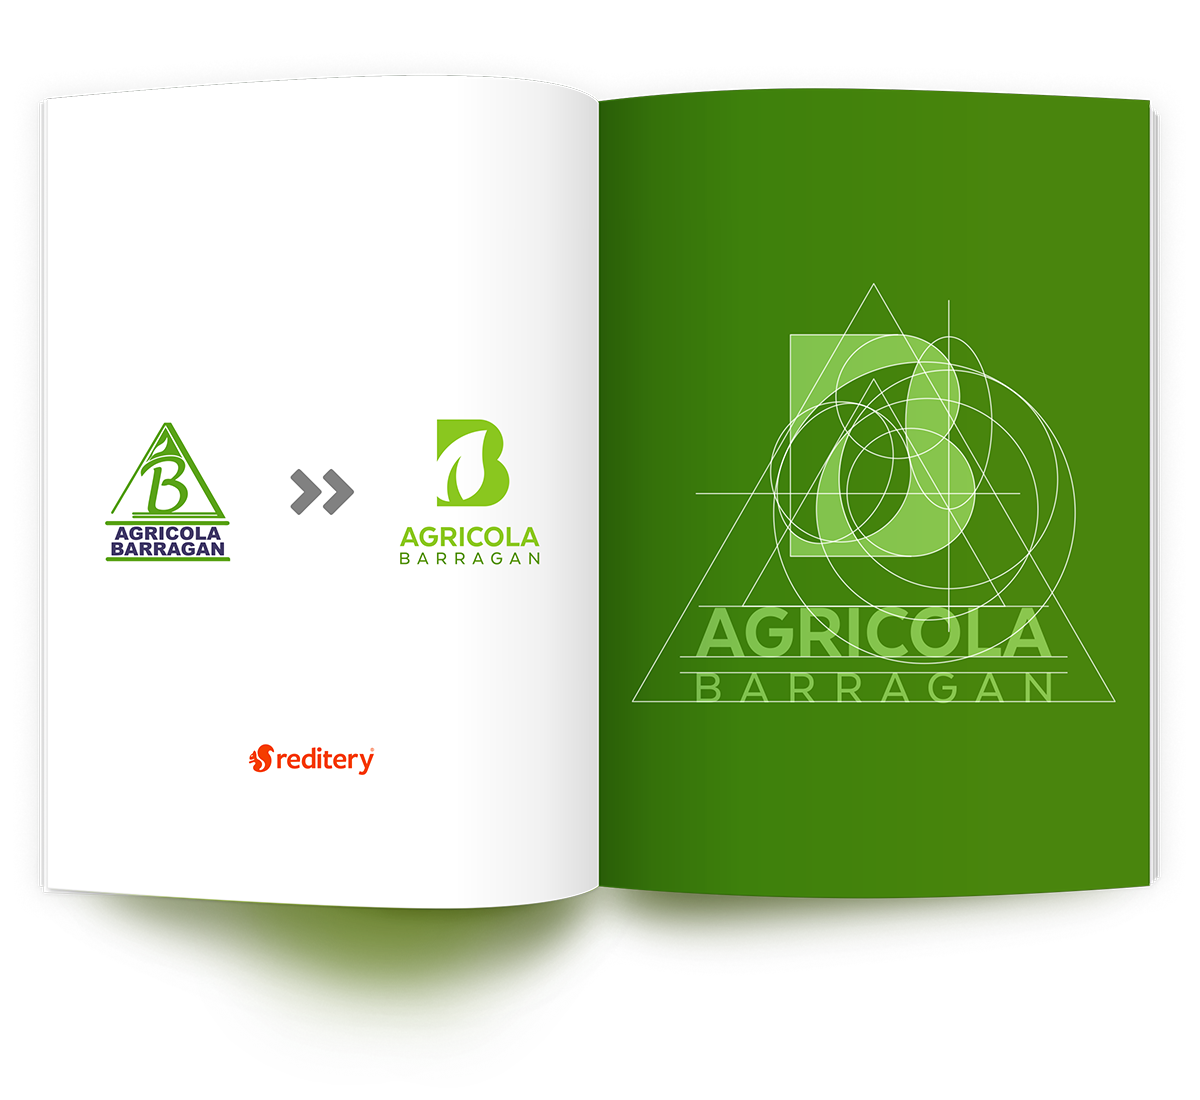 Nuevo Logotipo "Agrícola Barragán"